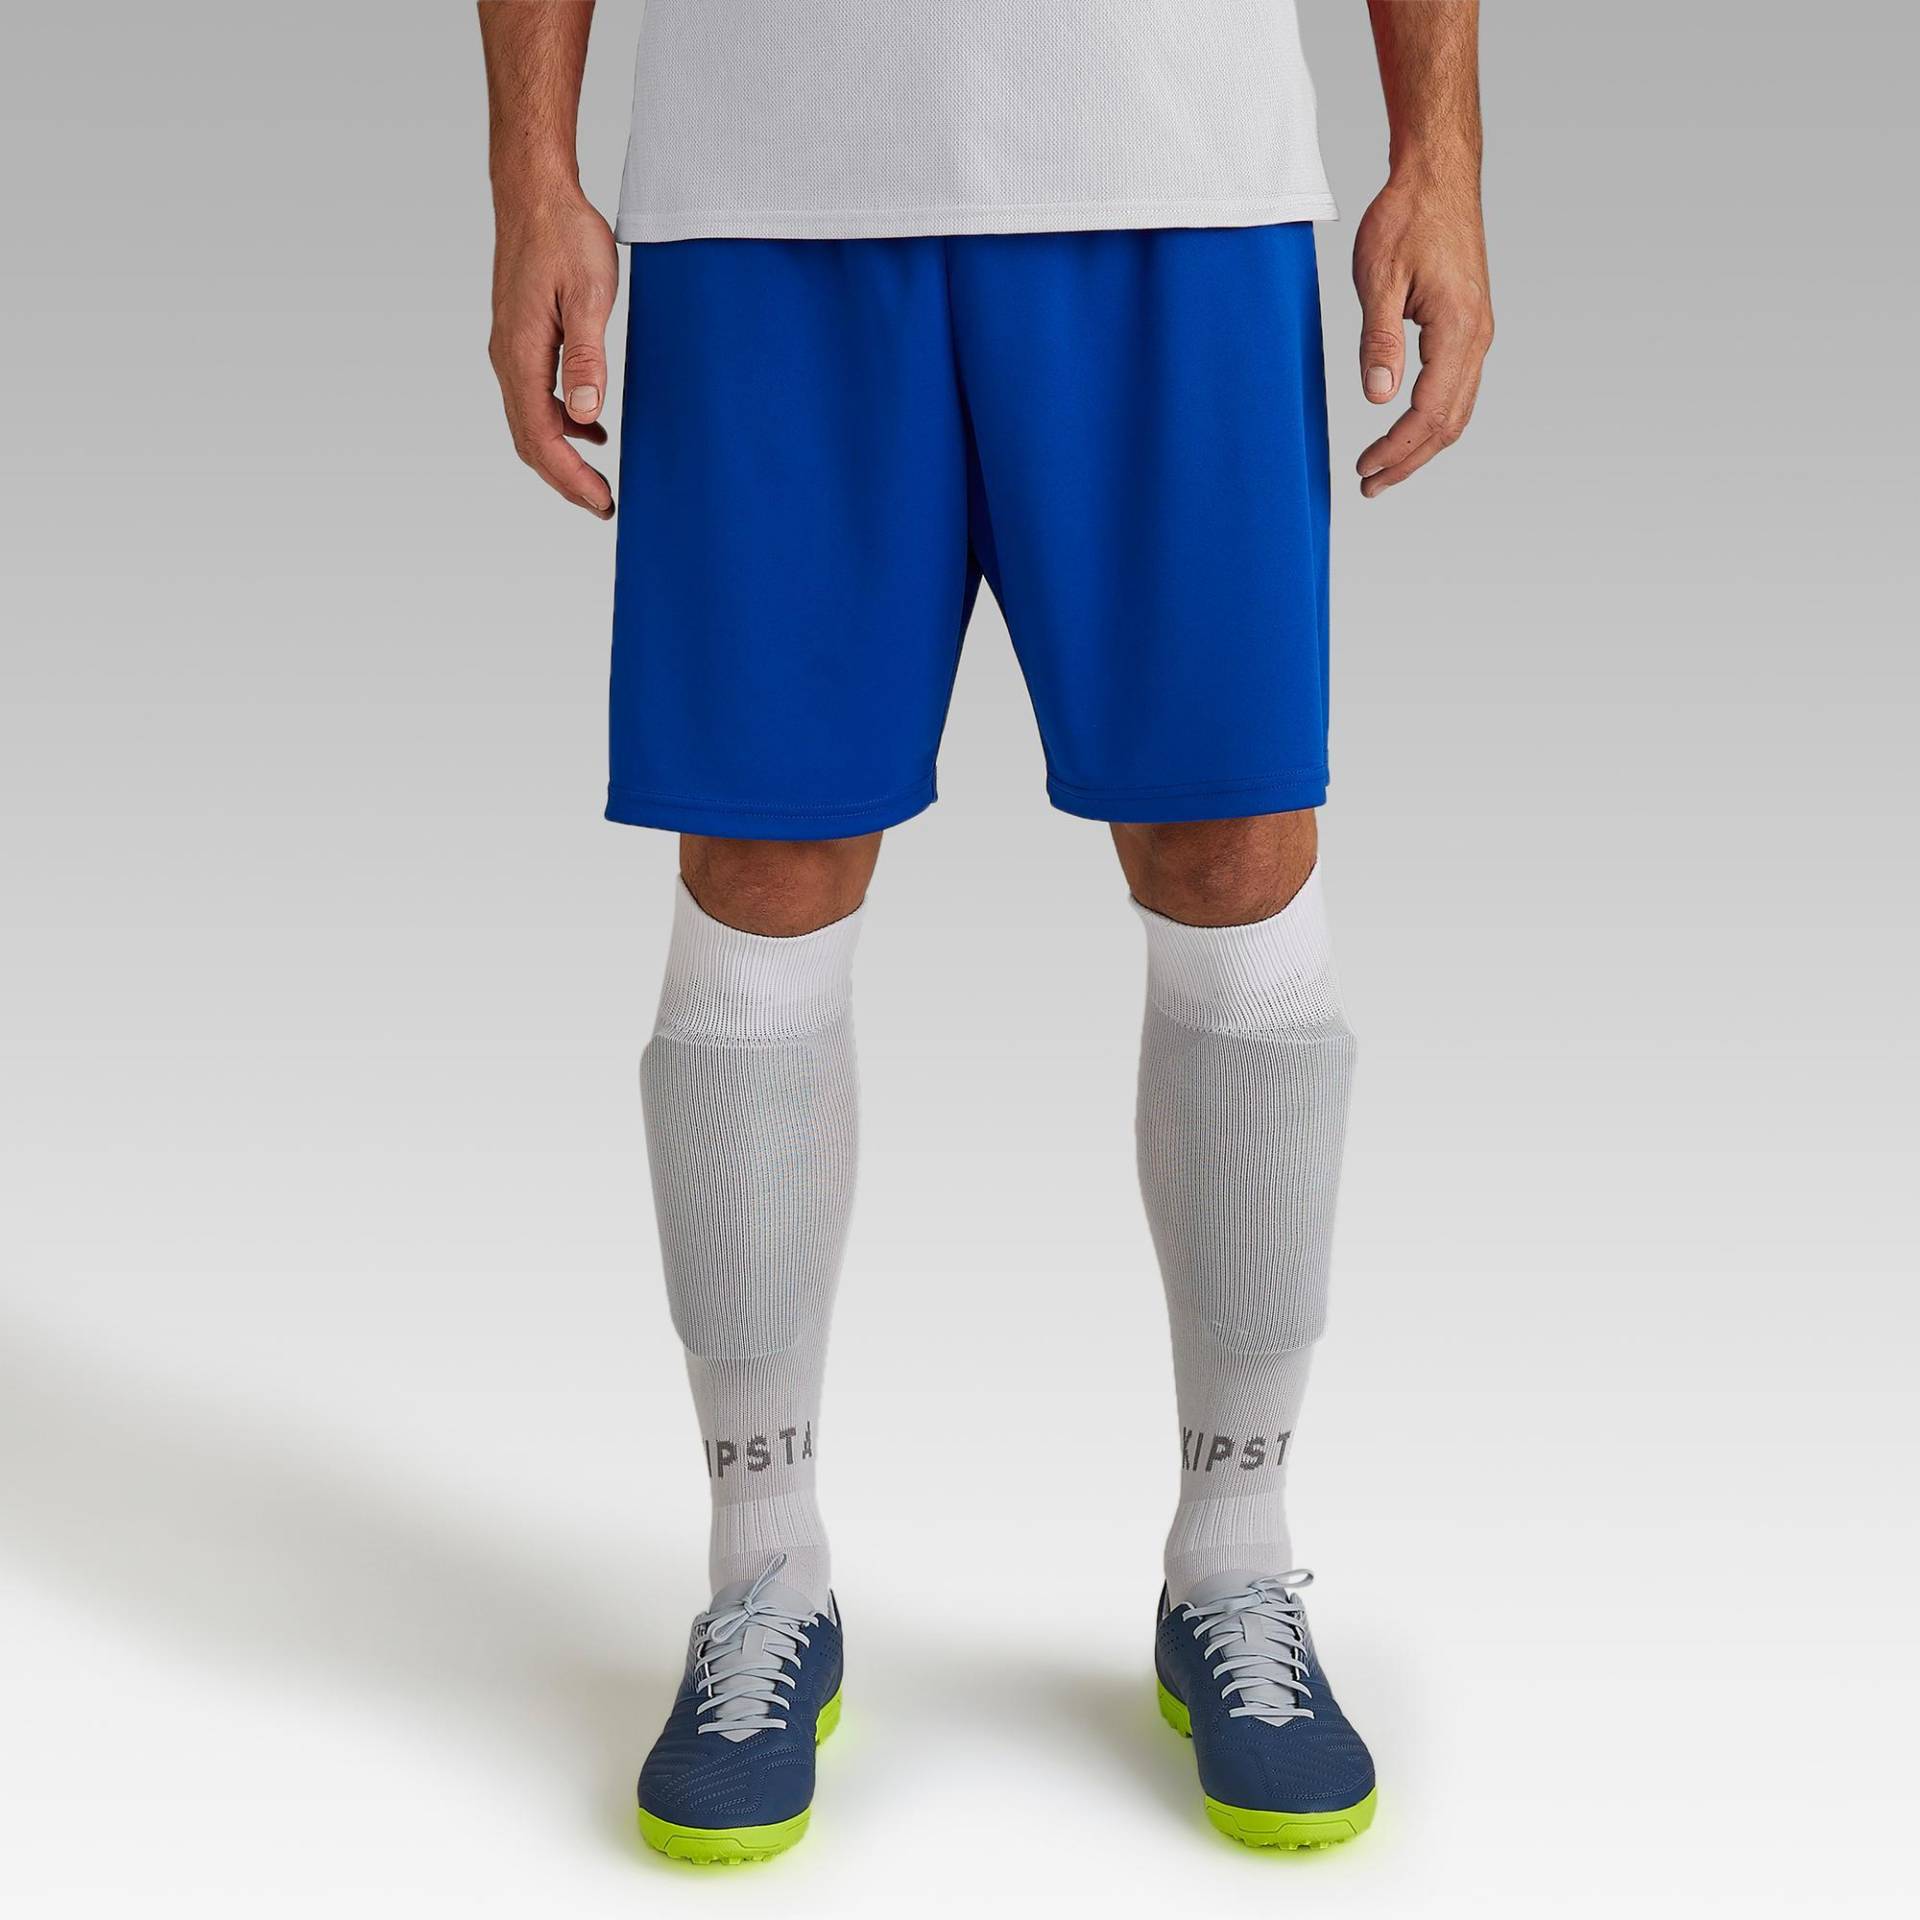 Damen/Herren Fussball Shorts - Essentiel blau von KIPSTA